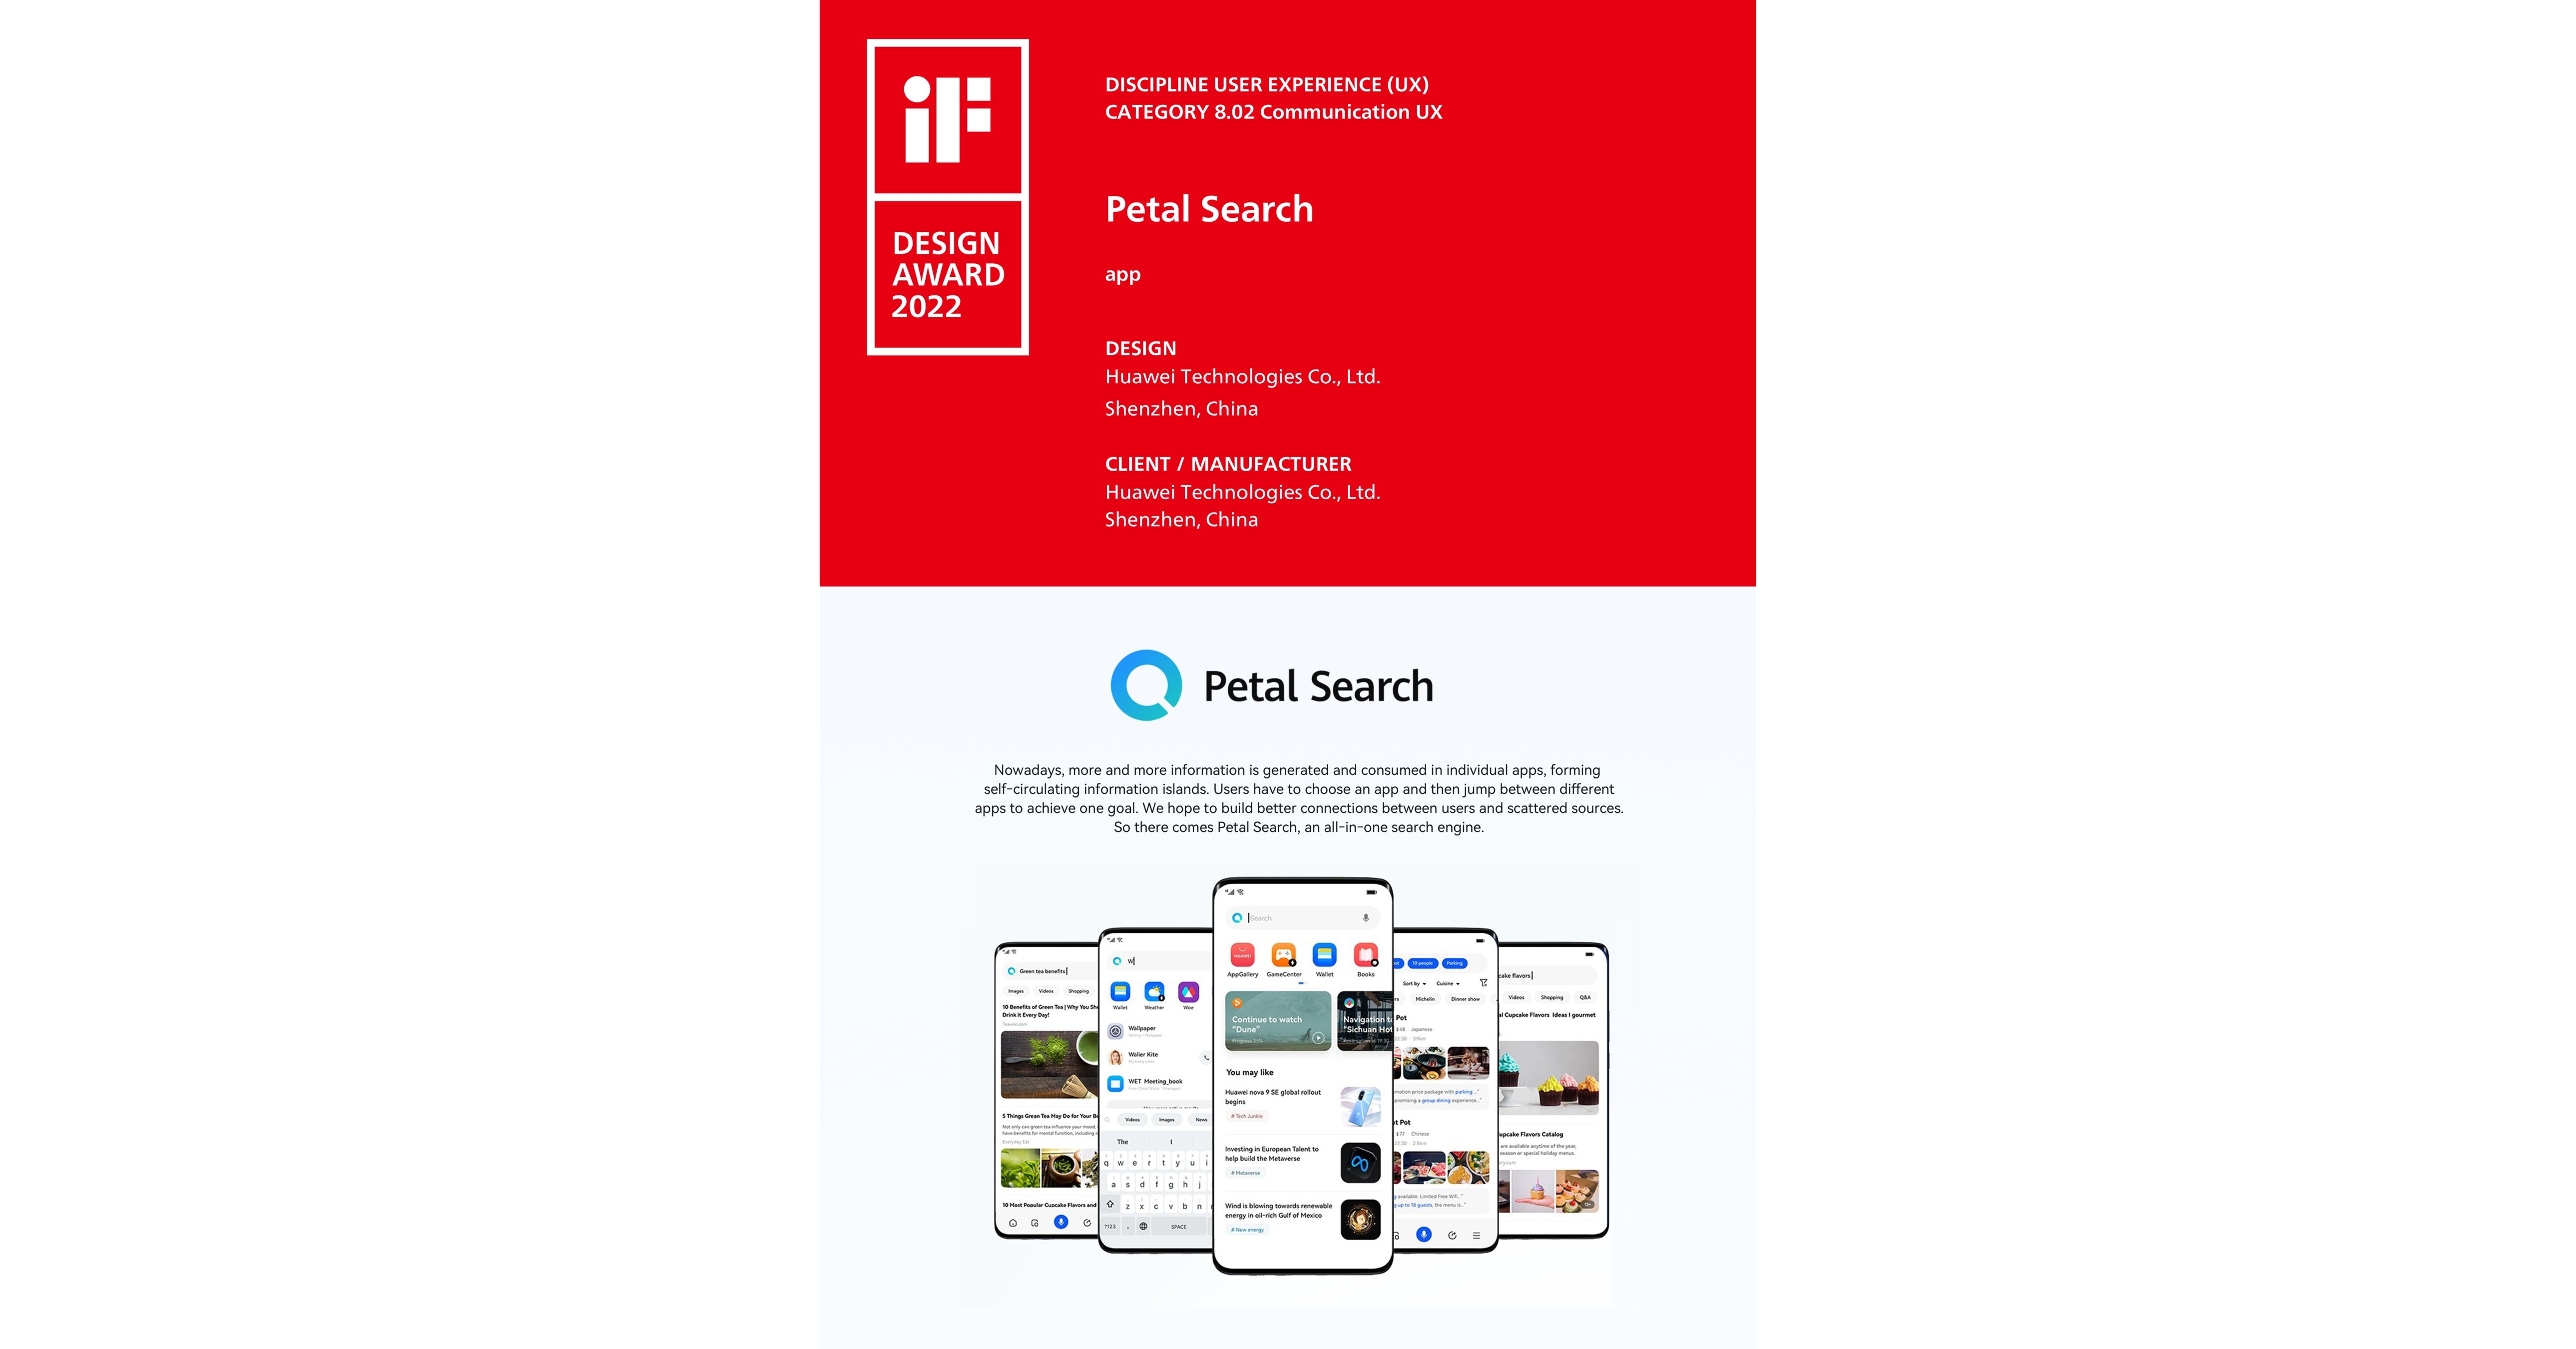 Petal Search zdobył nagrodę iF Award 2022, co wskazuje na jej zaangażowanie w obsługę wyszukiwarki nowej generacji